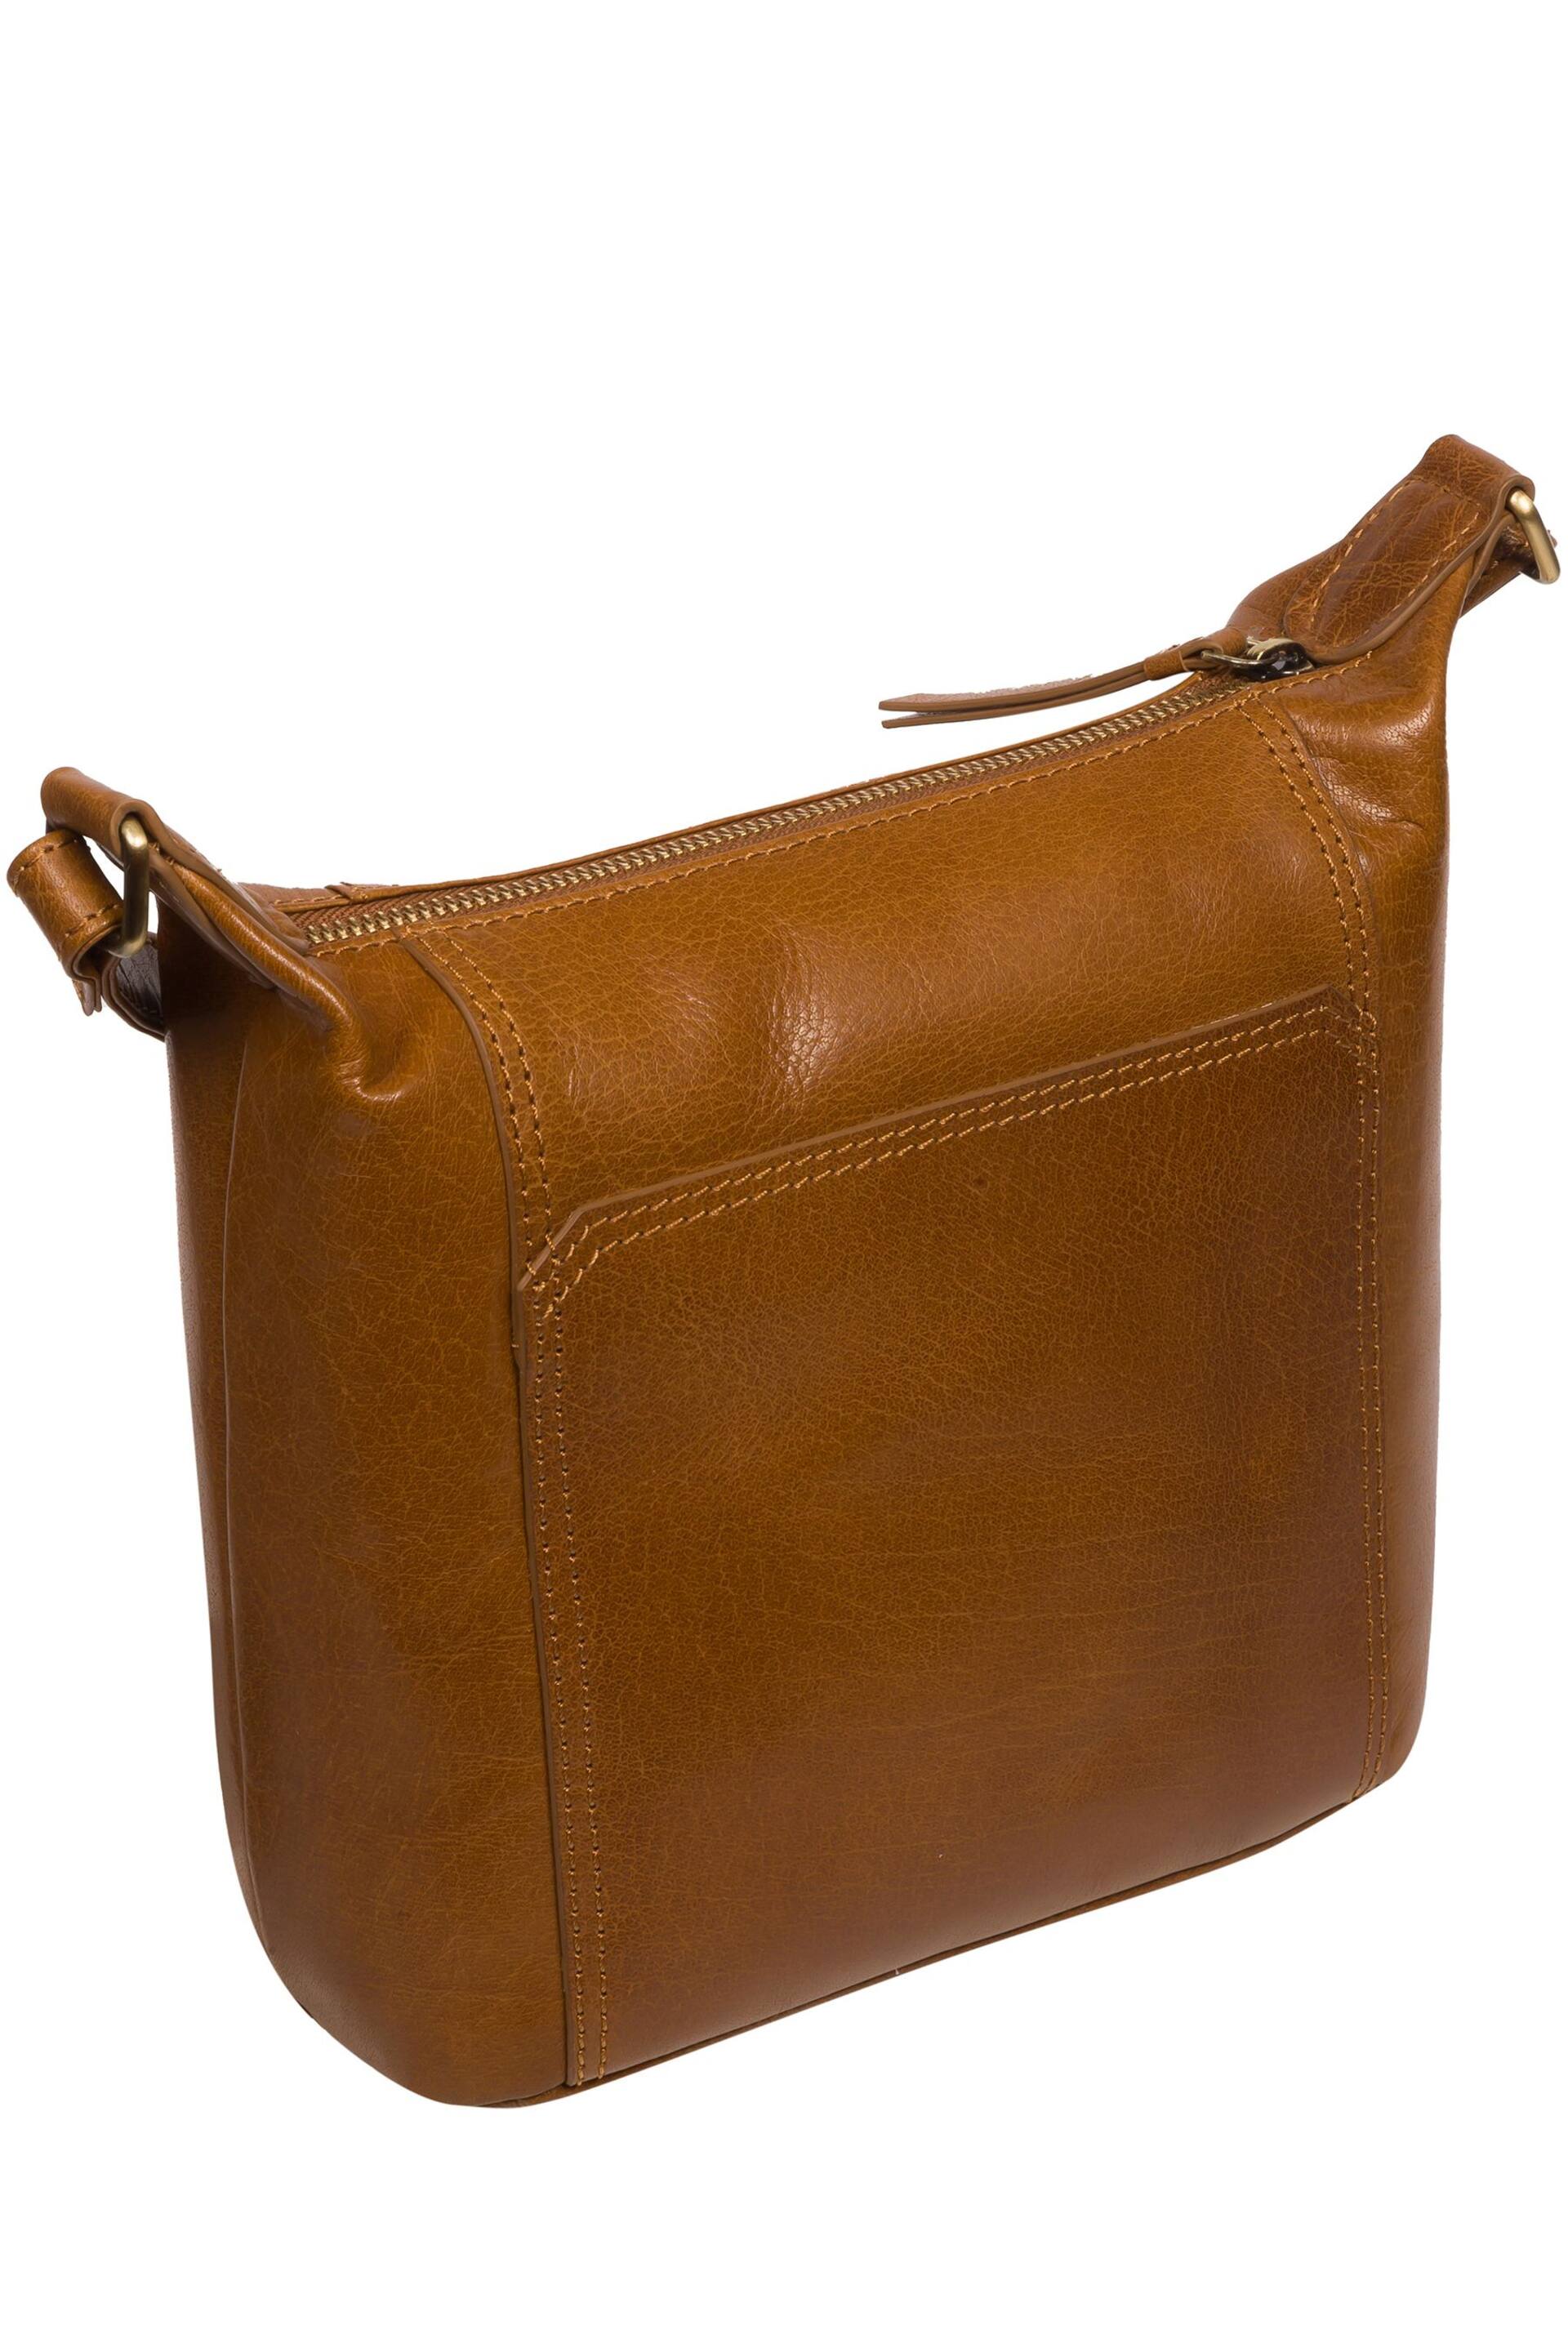 Conkca 'Kiki' Leather Shoulder Bag - Image 4 of 7